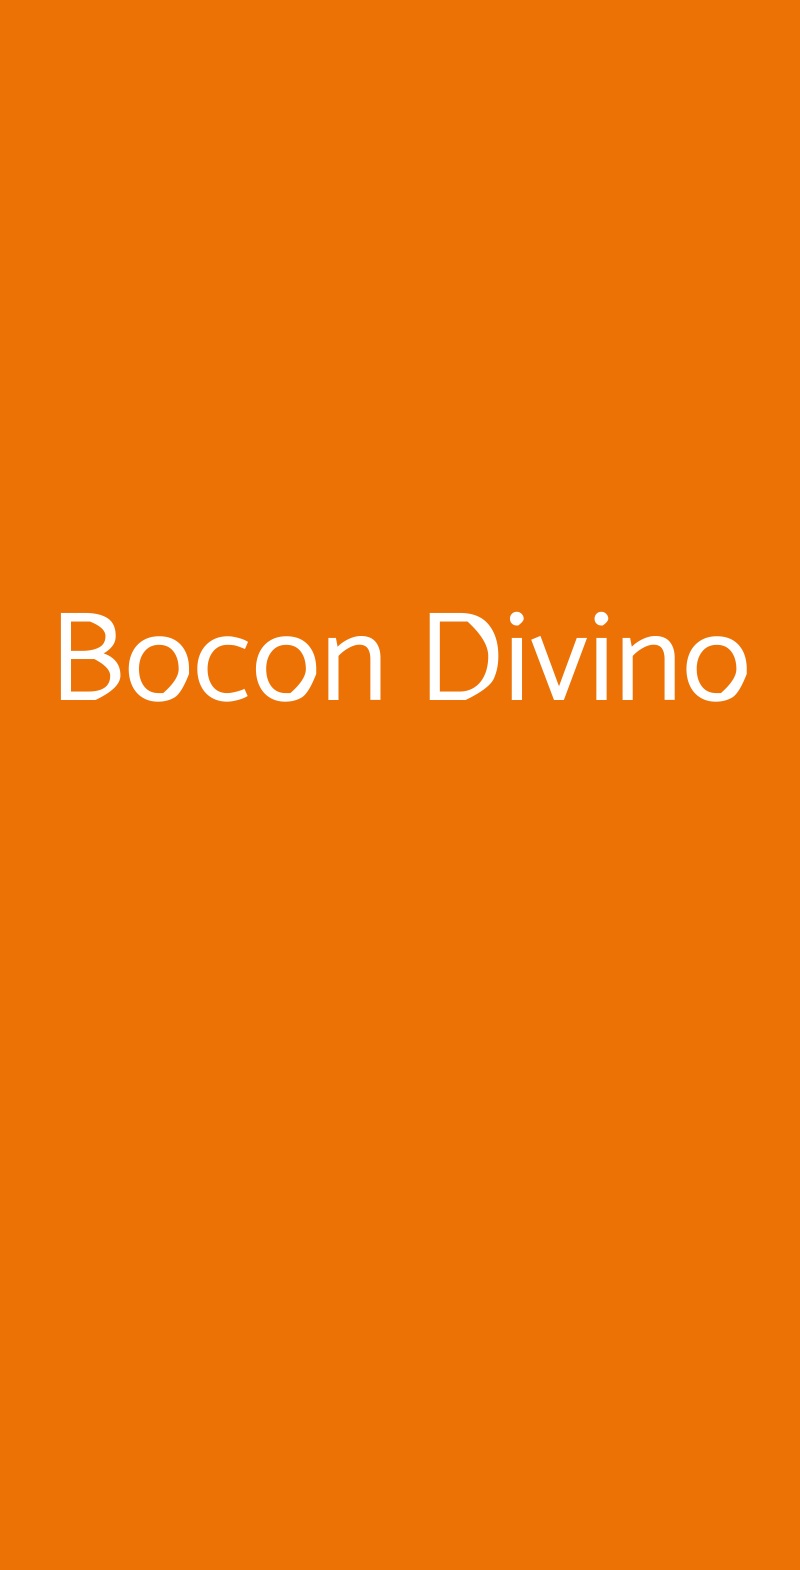 Bocon Divino Bagnacavallo menù 1 pagina